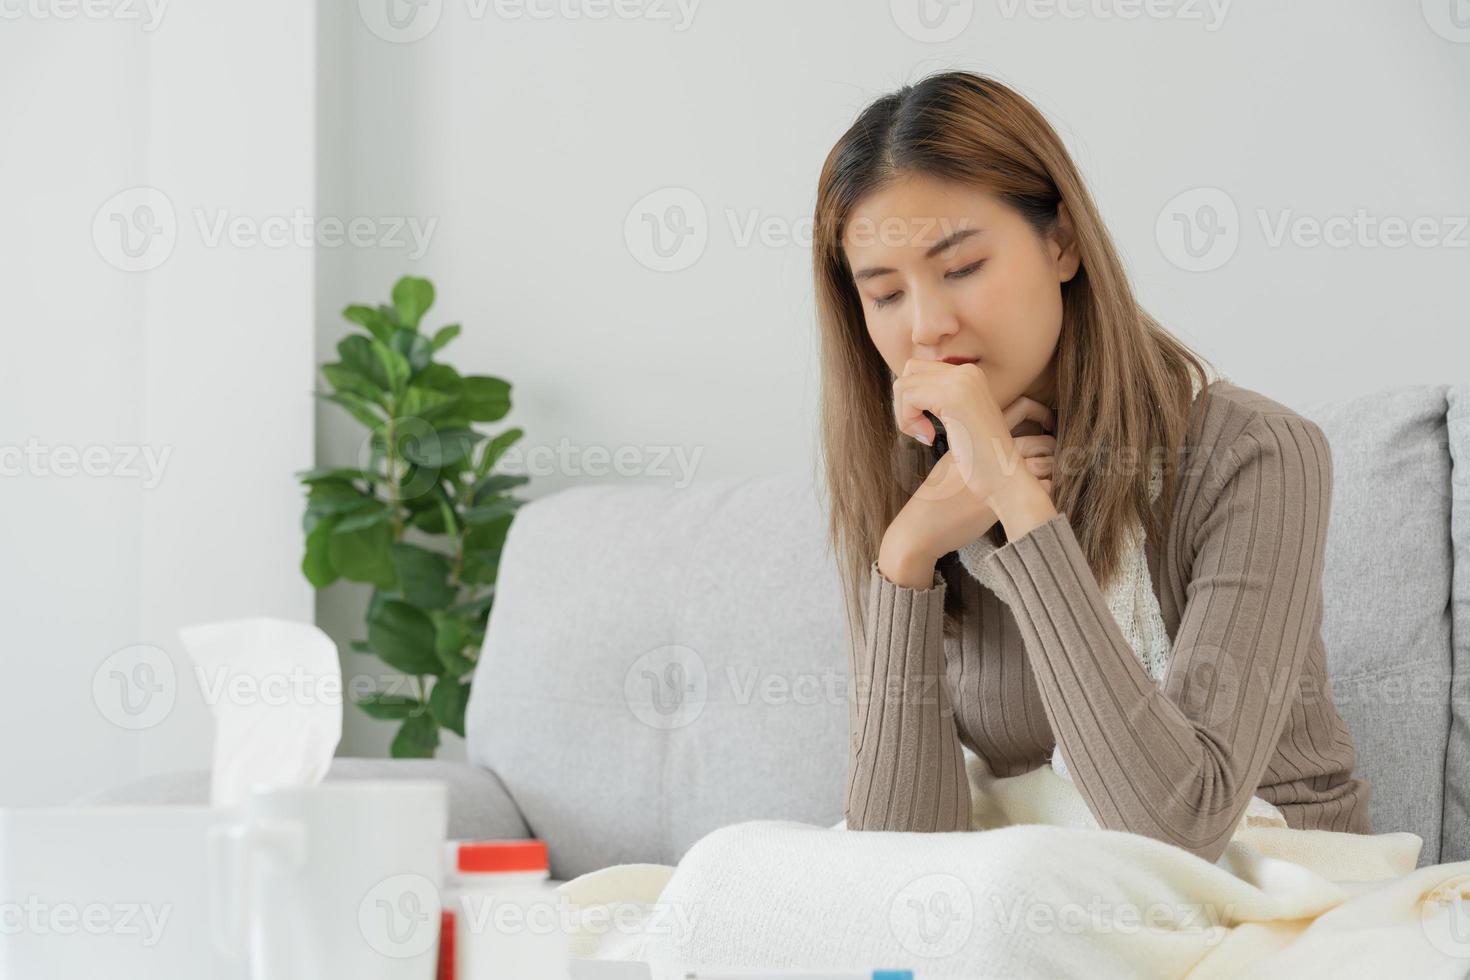 sjuk kvinna med en huvudvärk Sammanträde under filt, kvinna nysning och rinnande näsa med säsong- influensa, allergisk, hög feber och influensa, vilar, virus, coronavirus, känna sjukdom, respiratorisk foto